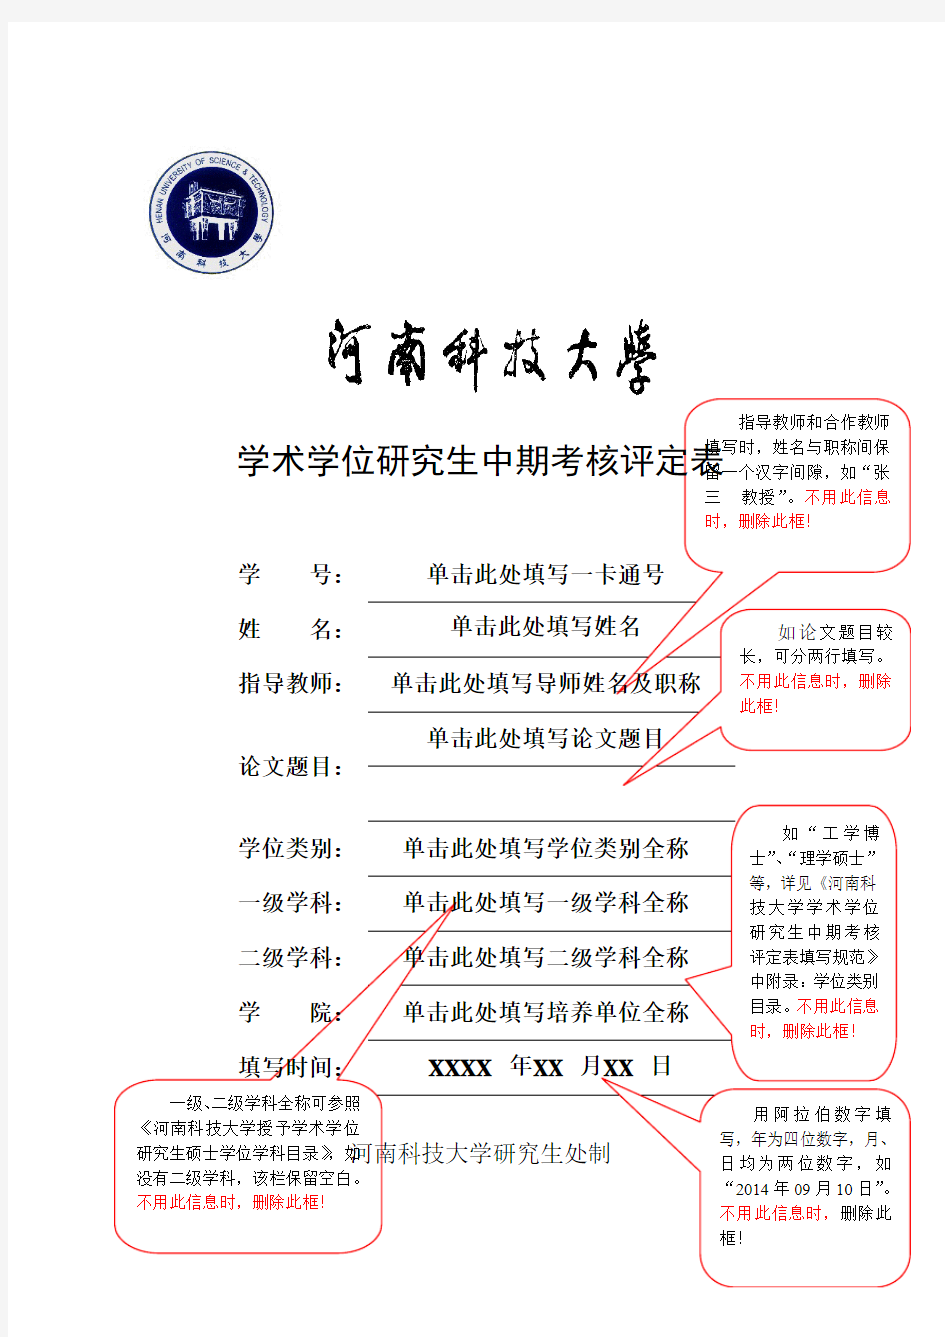 河南科技大学学术学位研究生中期考核评定表与填写规范